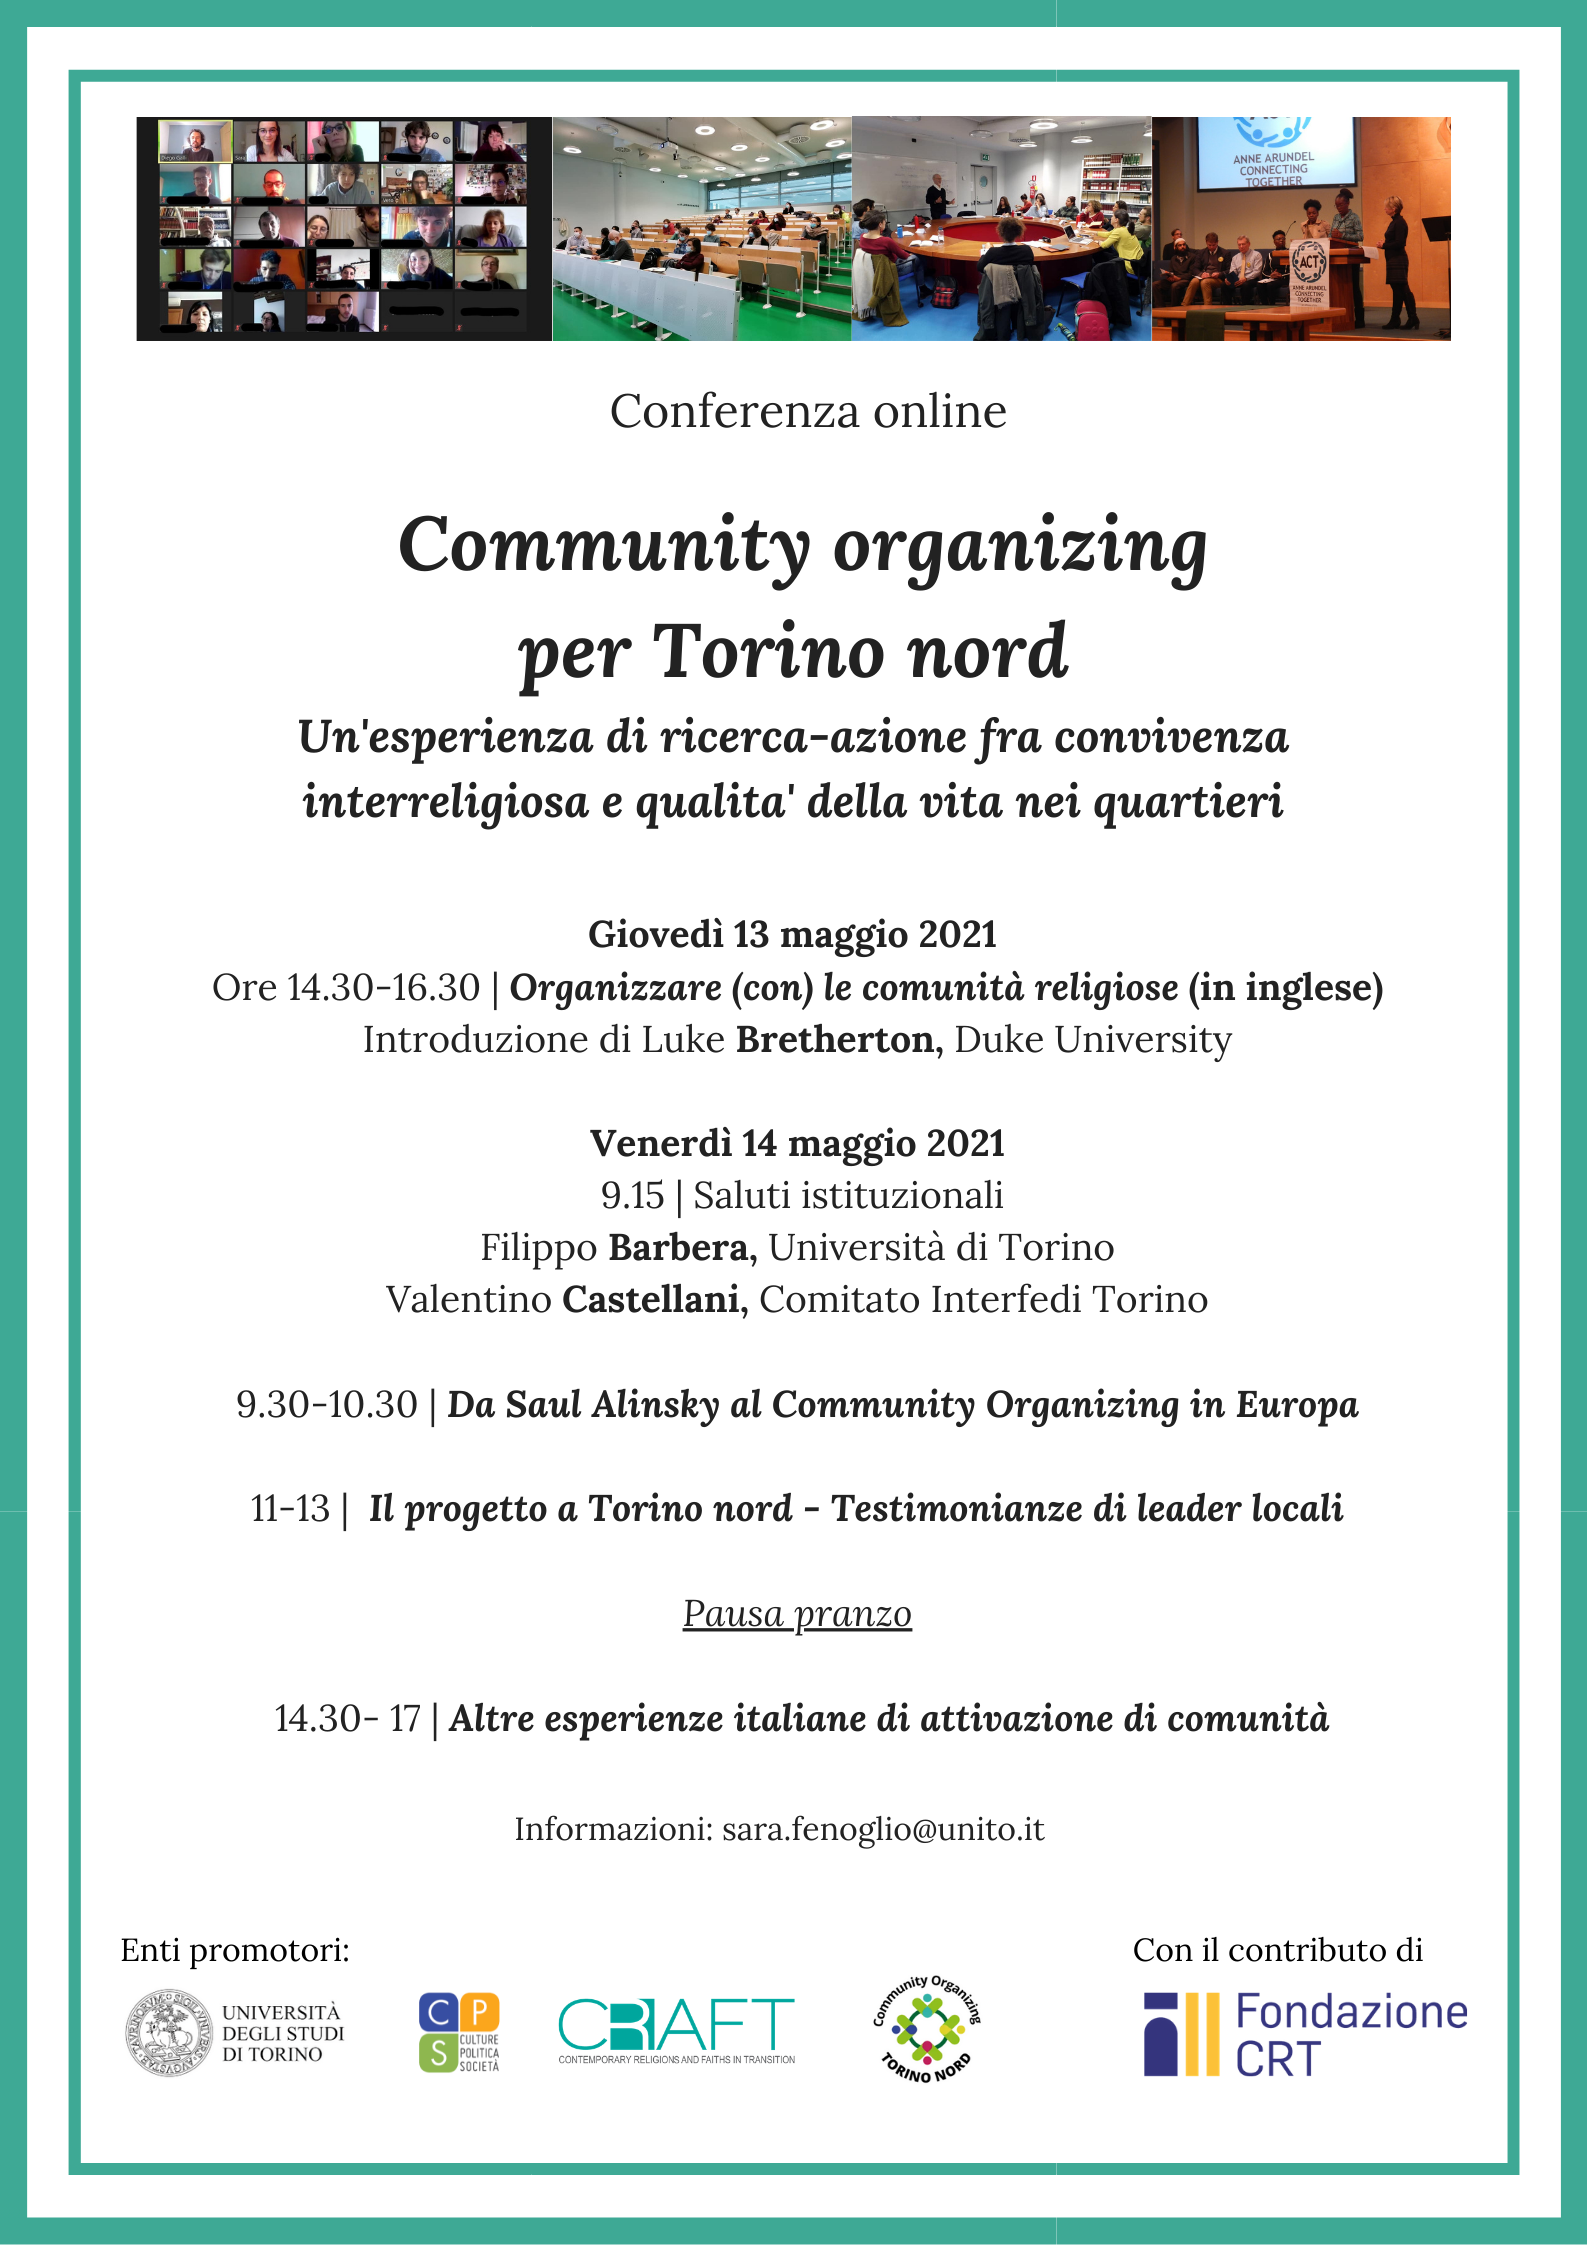 Conferenza UNITO "Community organizing per Torino nord. Un'esperienza di ricerca-azione fra convivenza interreligiosa e qualita' della vita nei quartieri"